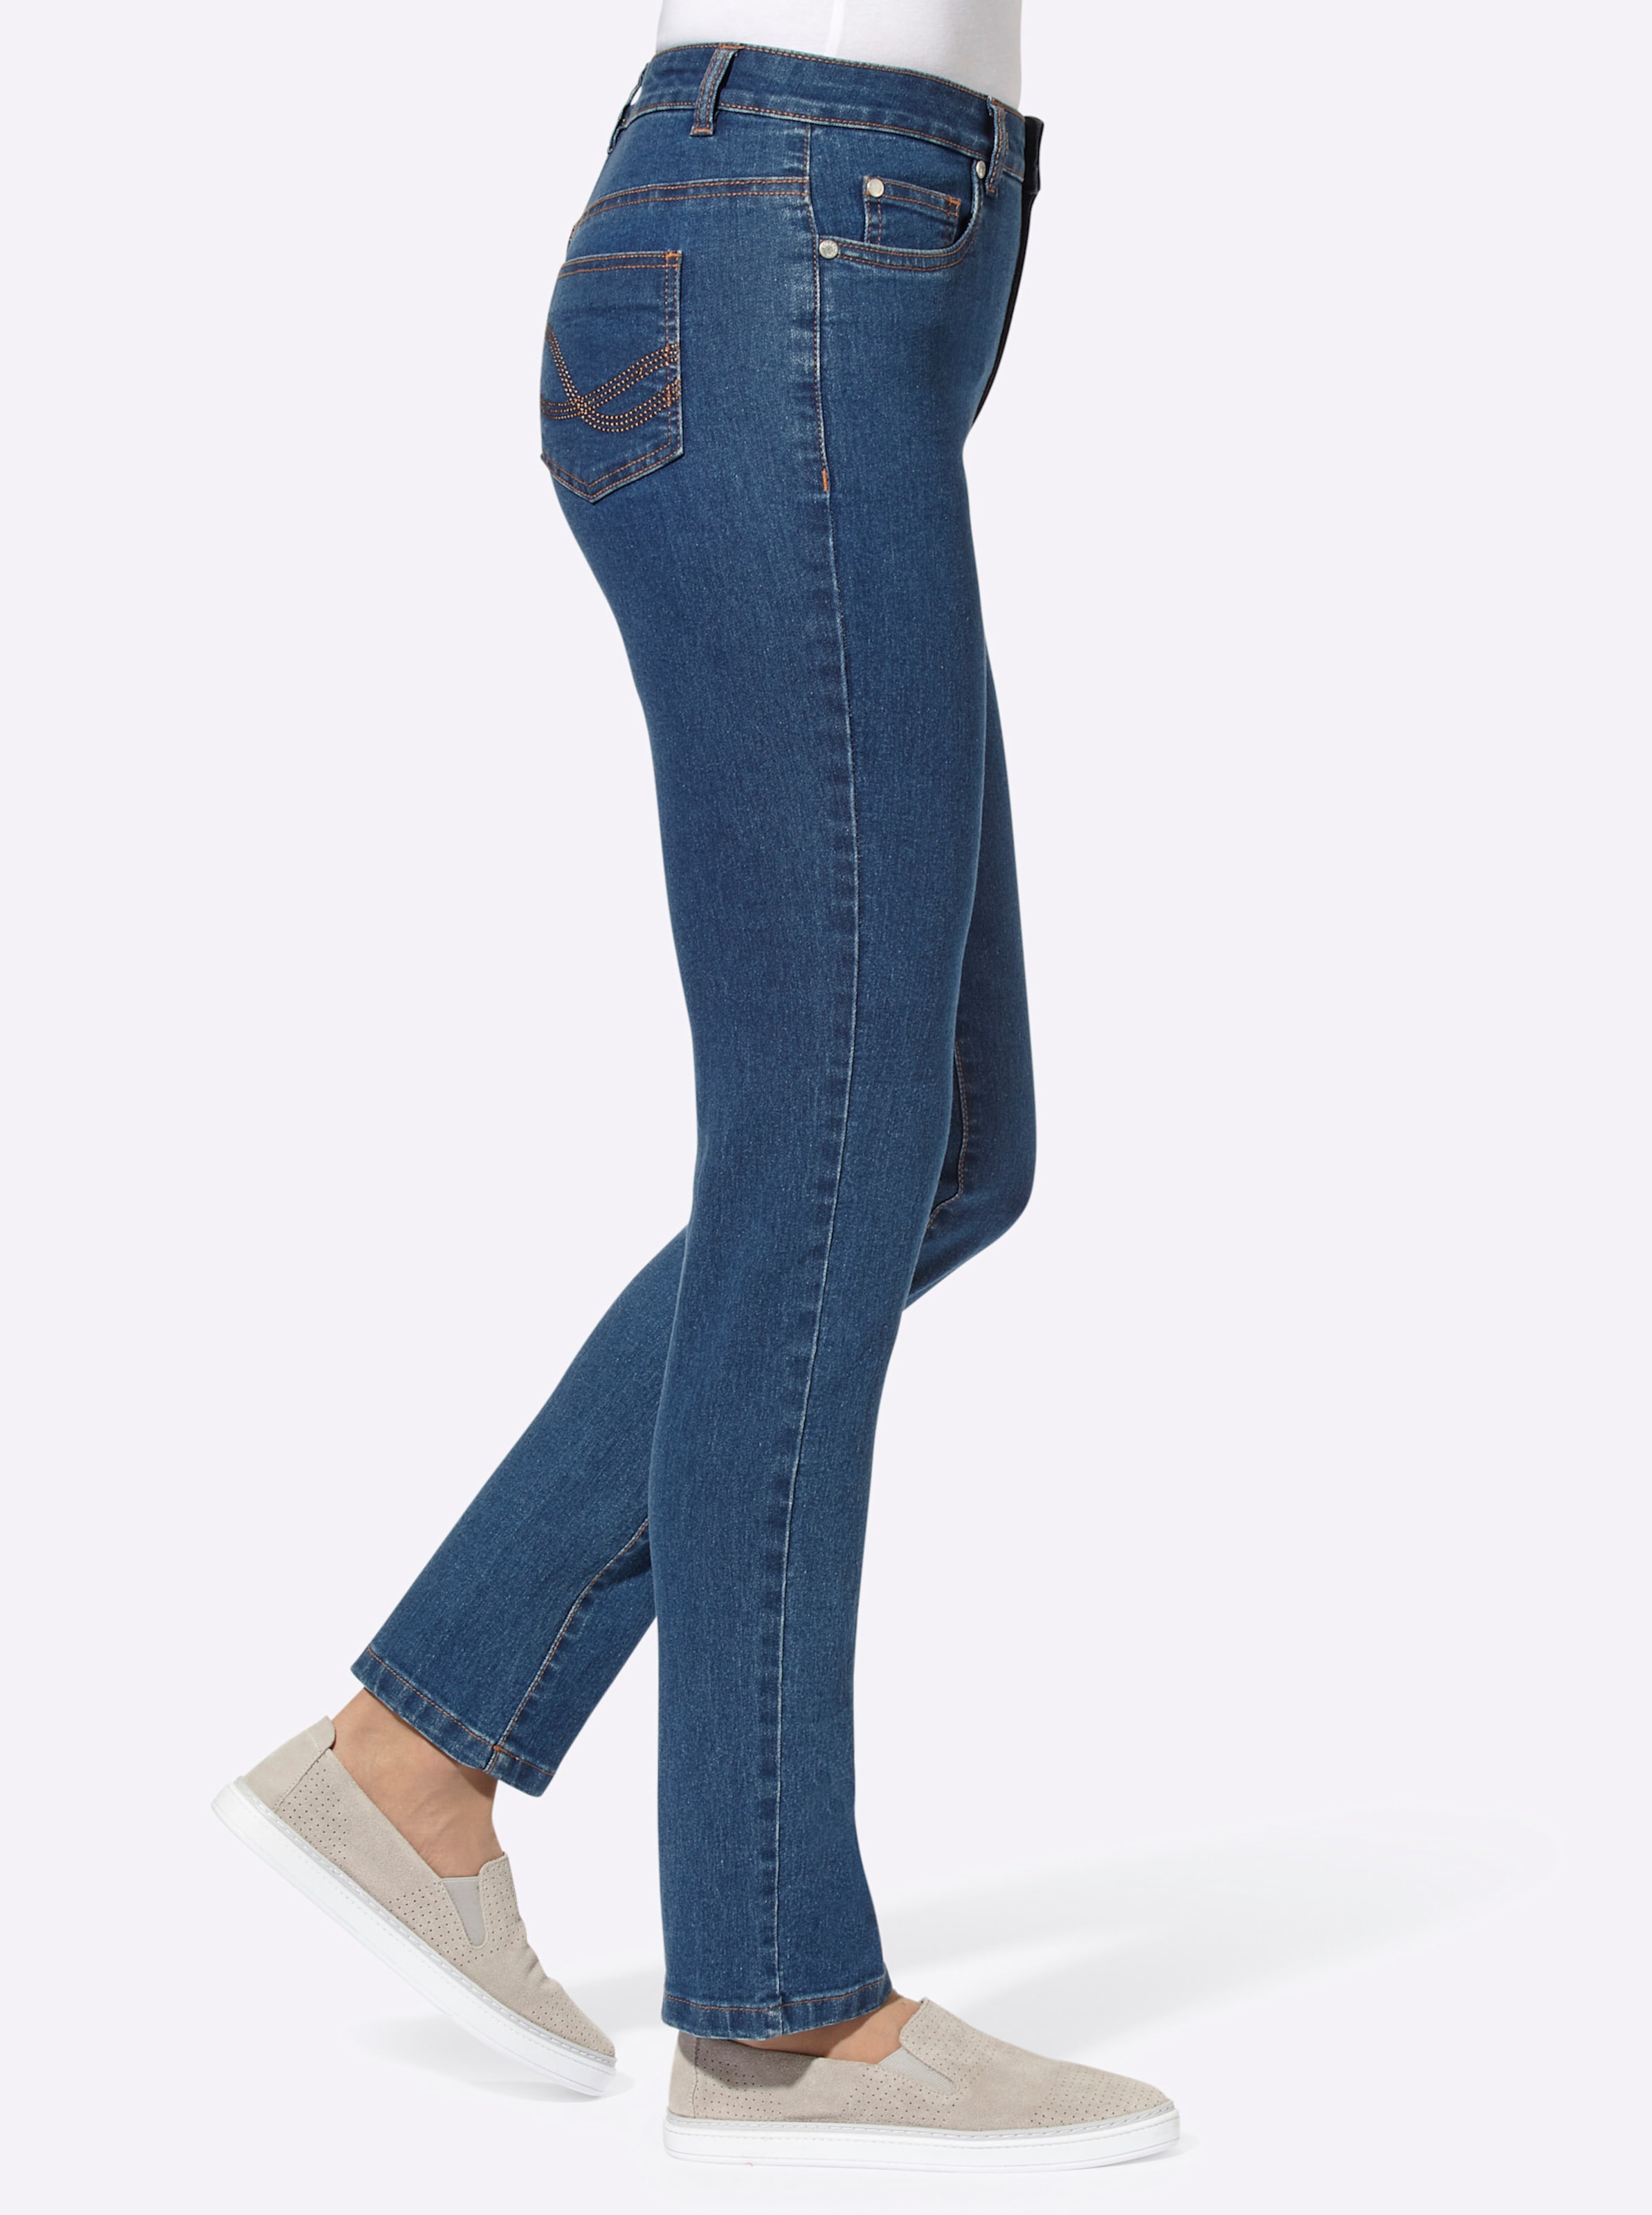 ck Nieten günstig Kaufen-5-Pocket-Jeans in blue-stone-washed von heine. 5-Pocket-Jeans in blue-stone-washed von heine <![CDATA[Sitzt optimal dank Stretch! Schmal geschnittene Jeans in der typischen 5-Pocket-Form mit Ziernieten an den Taschen. Gürtelschlaufen sowie Knopf- und Rei